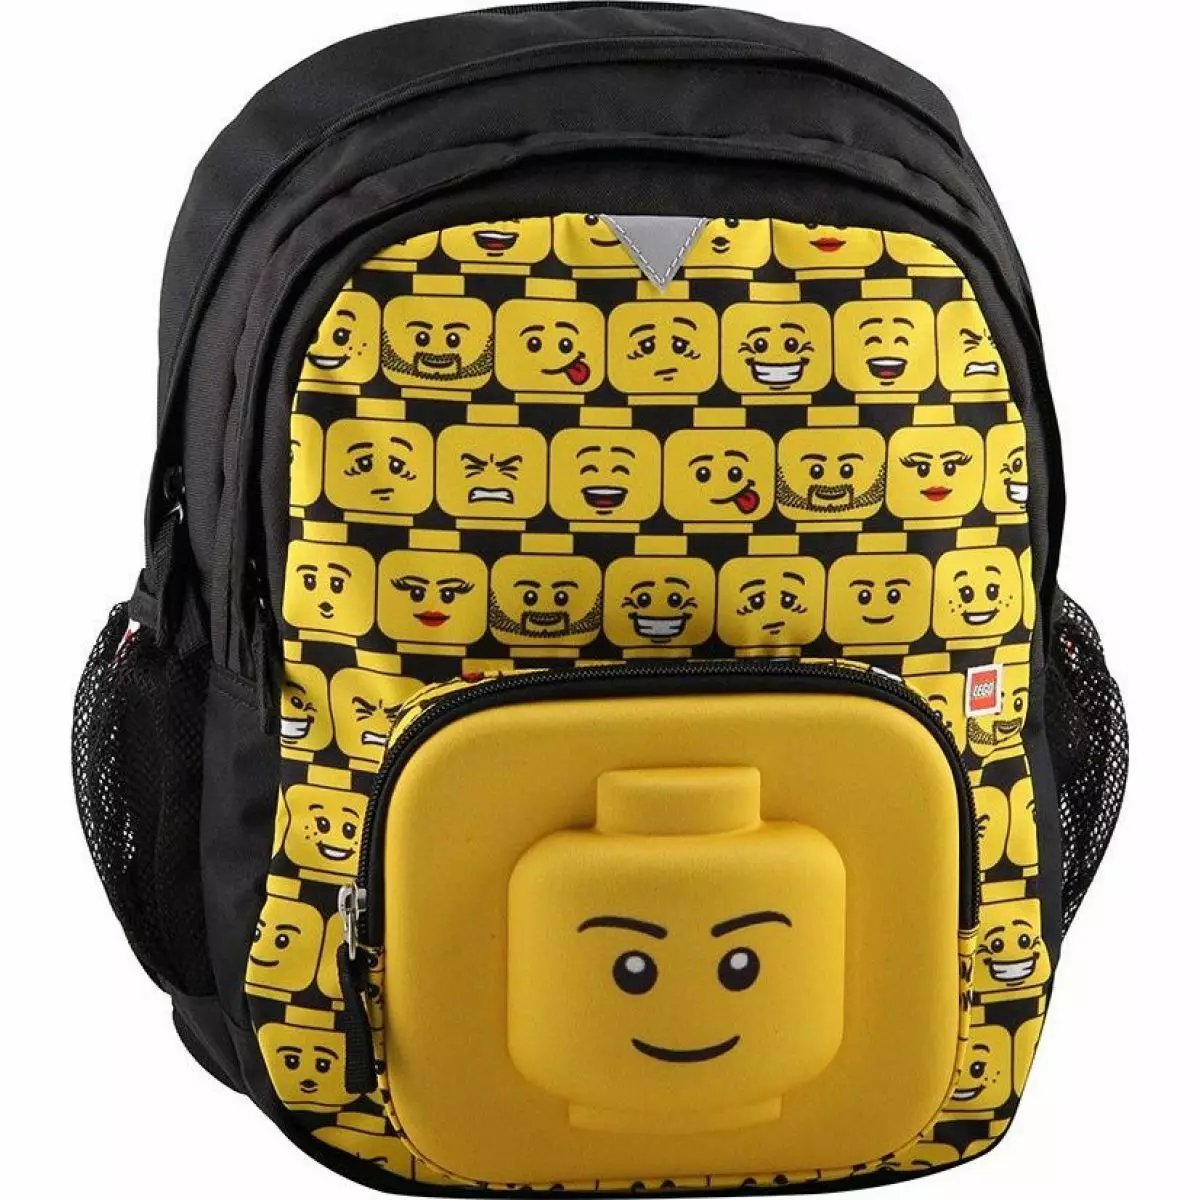 Sacs à dos Lego: Rangers d'école pour filles et garçons, porte-documents avec un dos orthopédique pour les premières niveleuses. Comment laver le modèle pour l'école? 15397_39